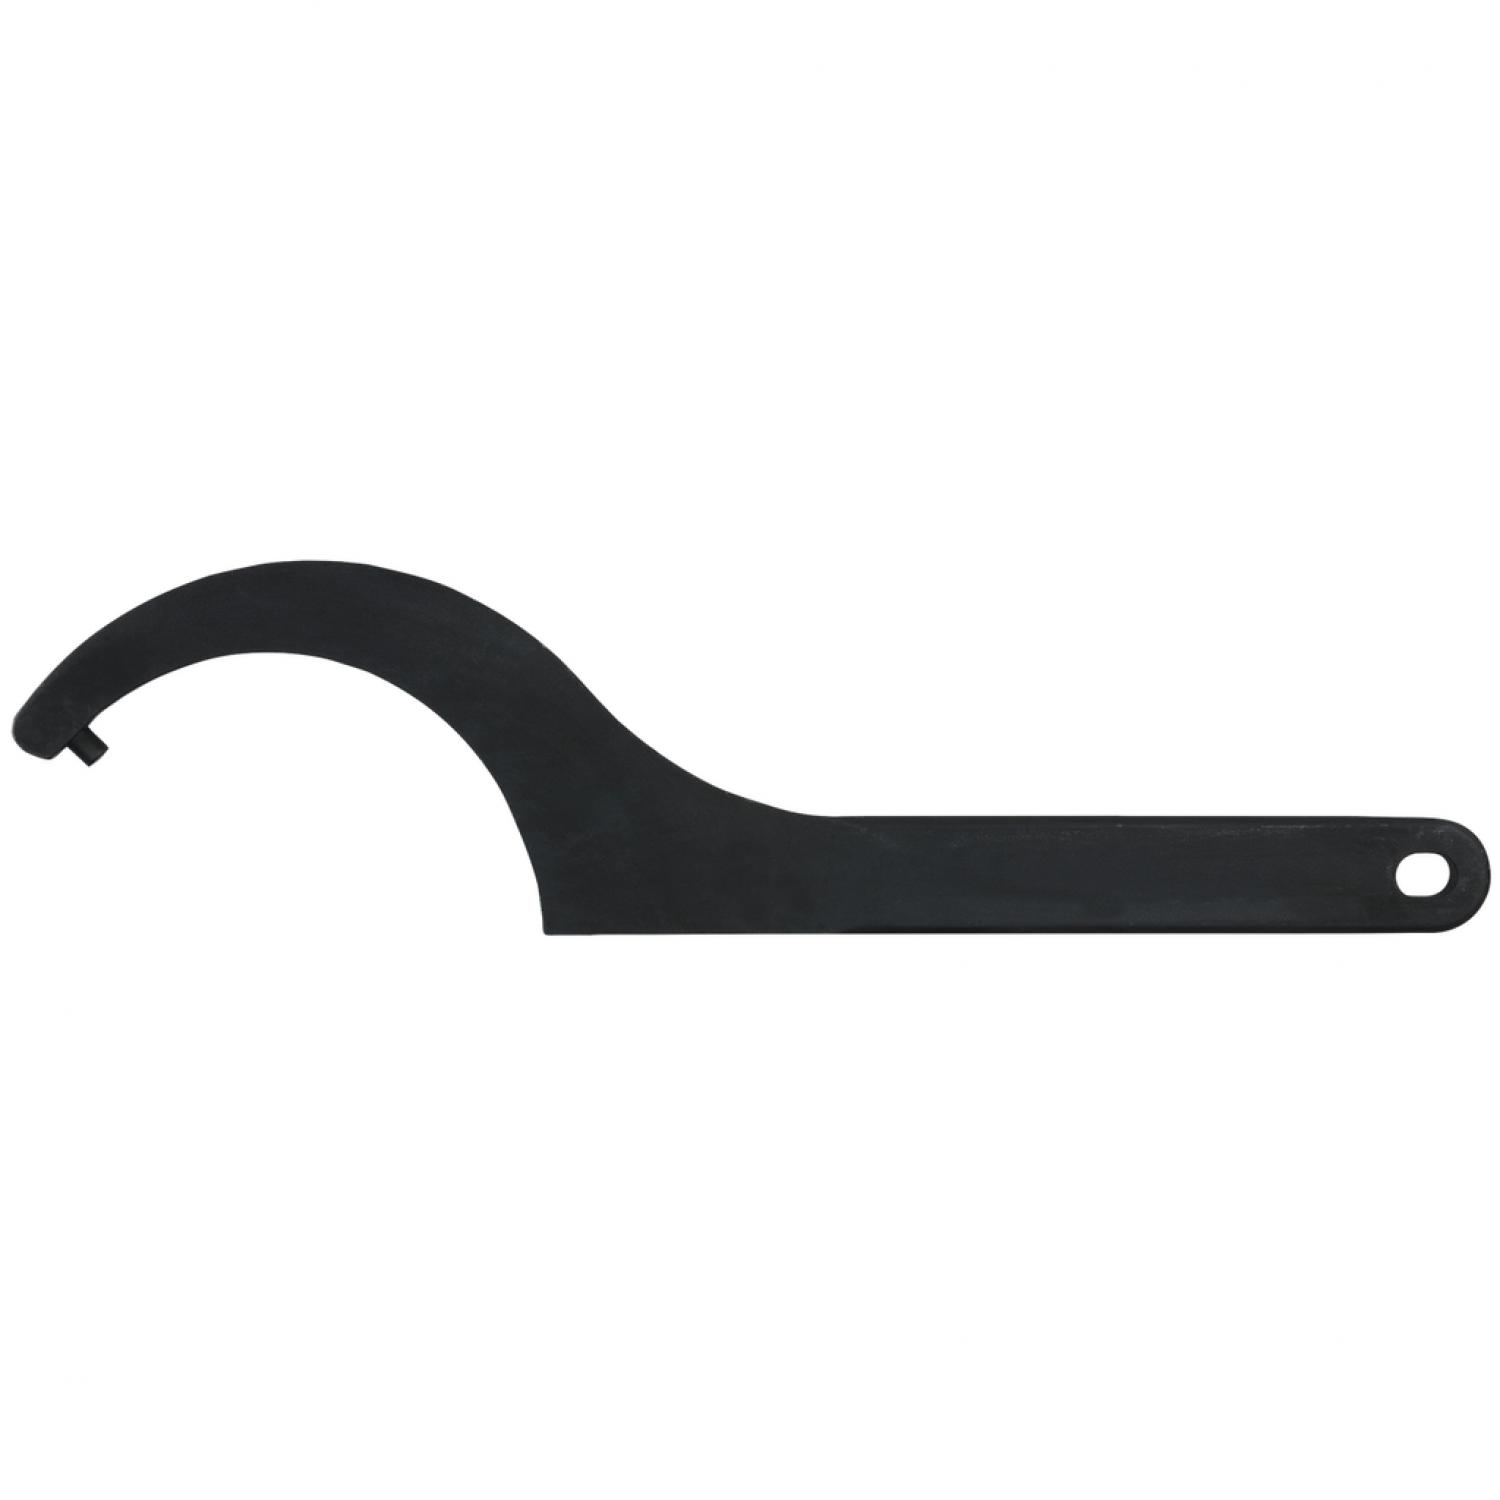 Прочный крючковый ключ с цапфами, 12-14 мм